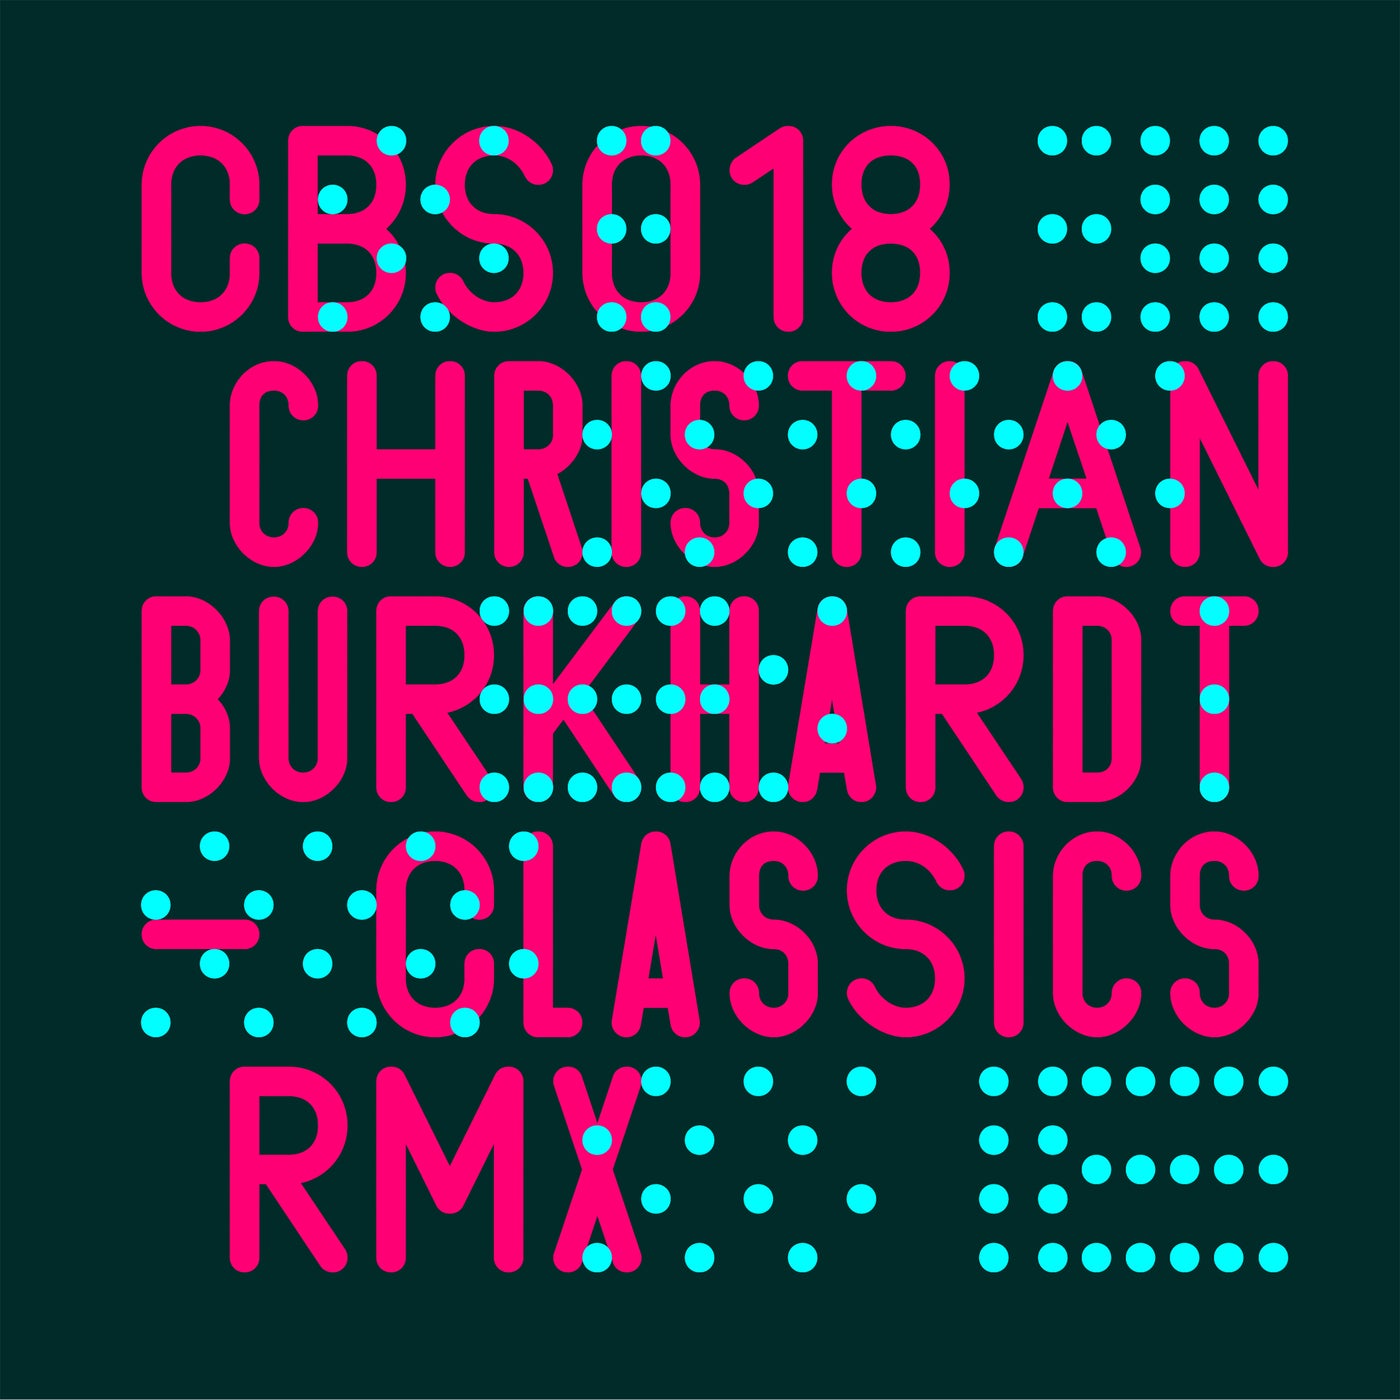 Cover - Christian Burkhardt - Redford (Monark RMX)